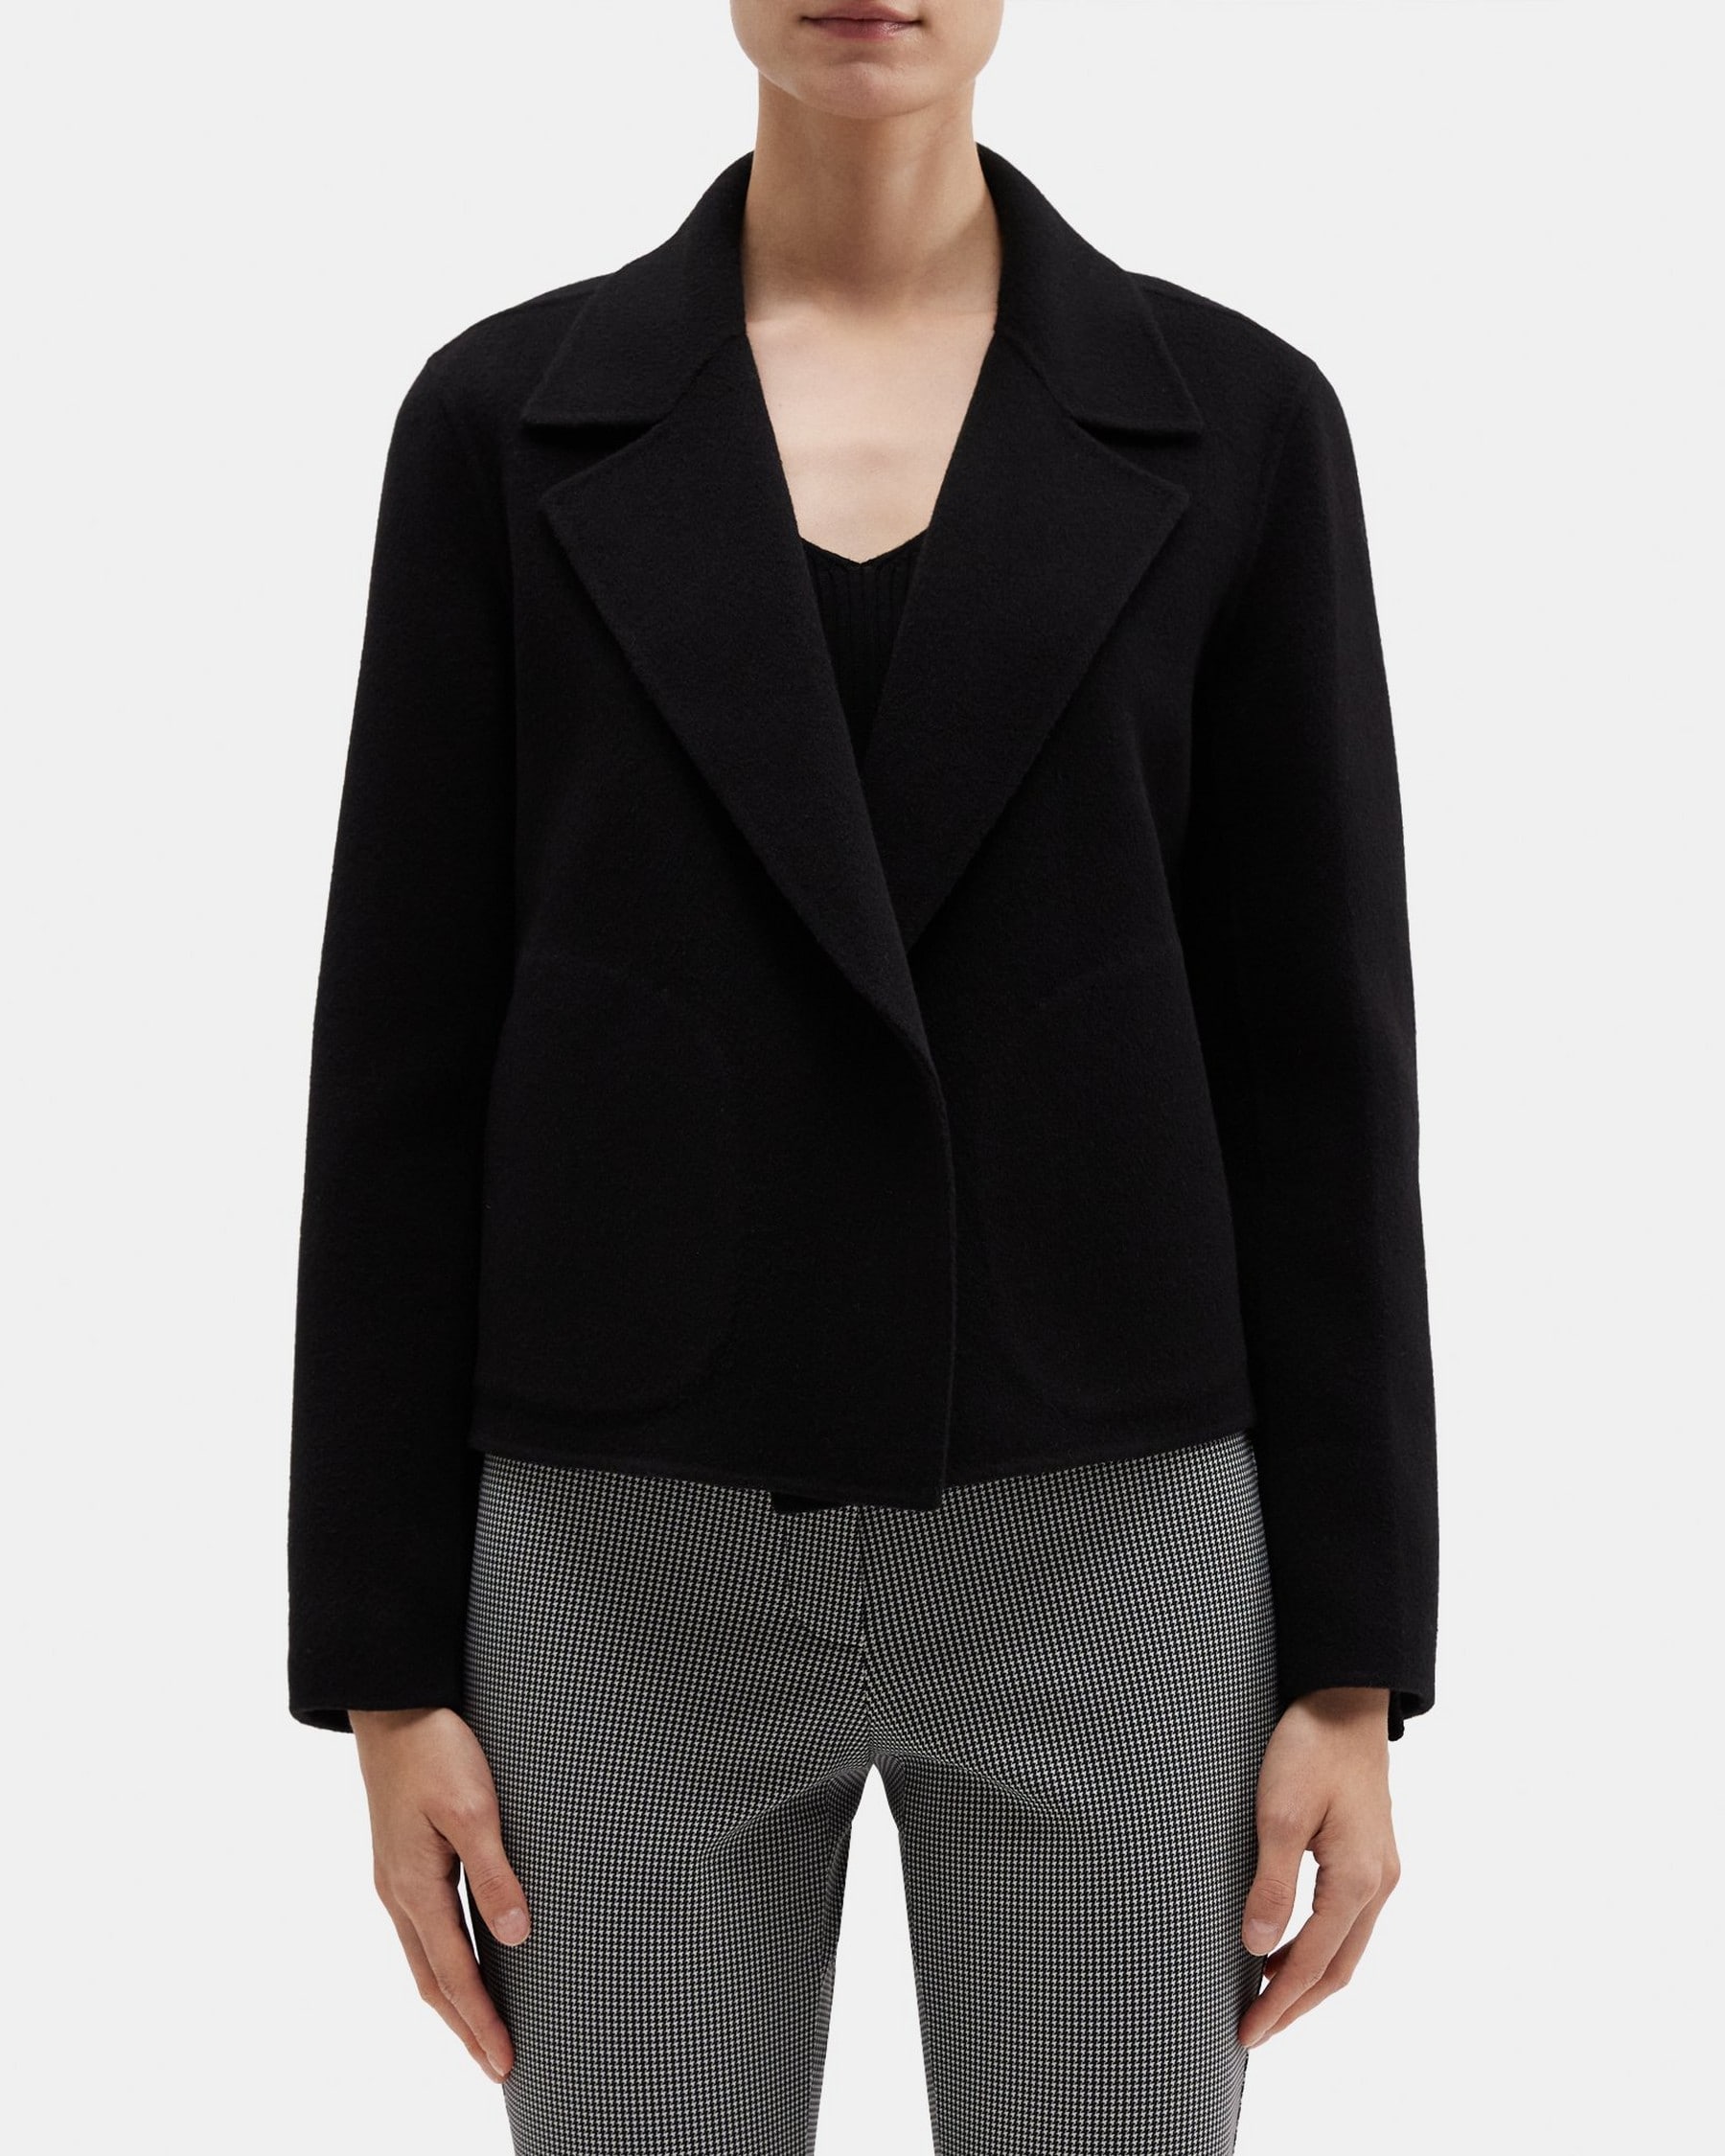 띠어리 Theory Cropped Open Front Jacket in Double-Face Wool-Cashmere,BLACK